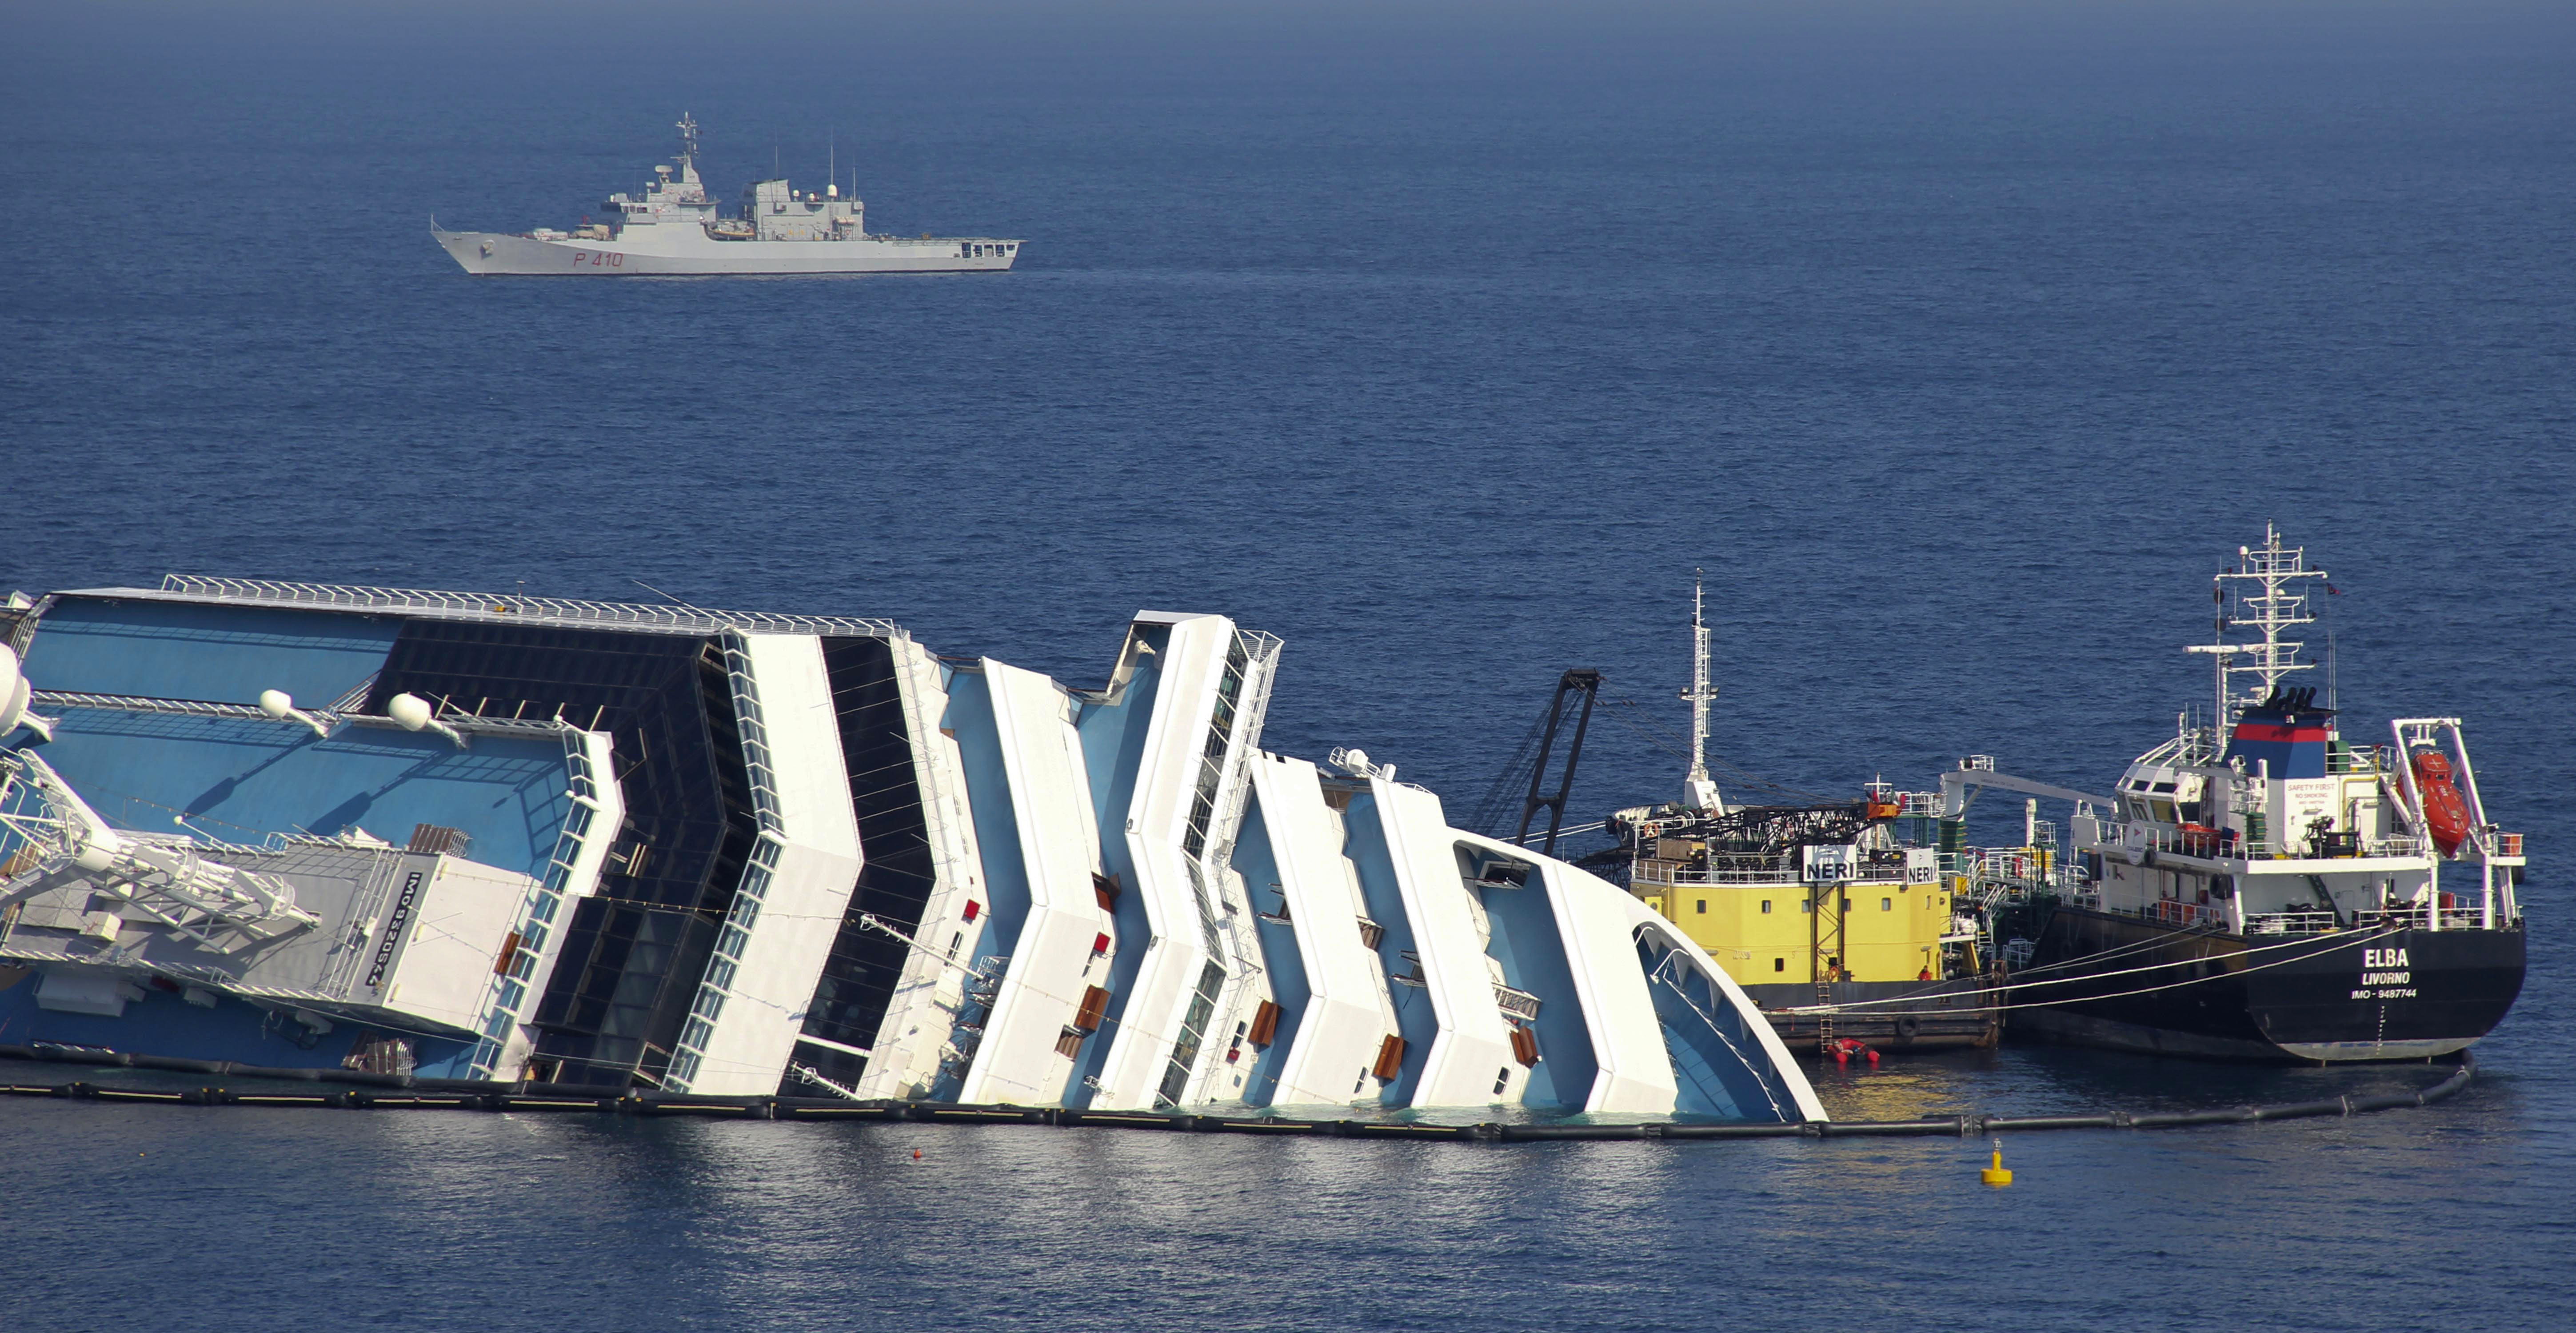 9. Kryssningsfartyg. Att åka på en kryssningsresa är ingen bra idé. Senast vi fick genomlida en fredagen den 13:e gick det italienska kryssningsfartyget Costa Concordia på grund och minst 30 personer omkom.